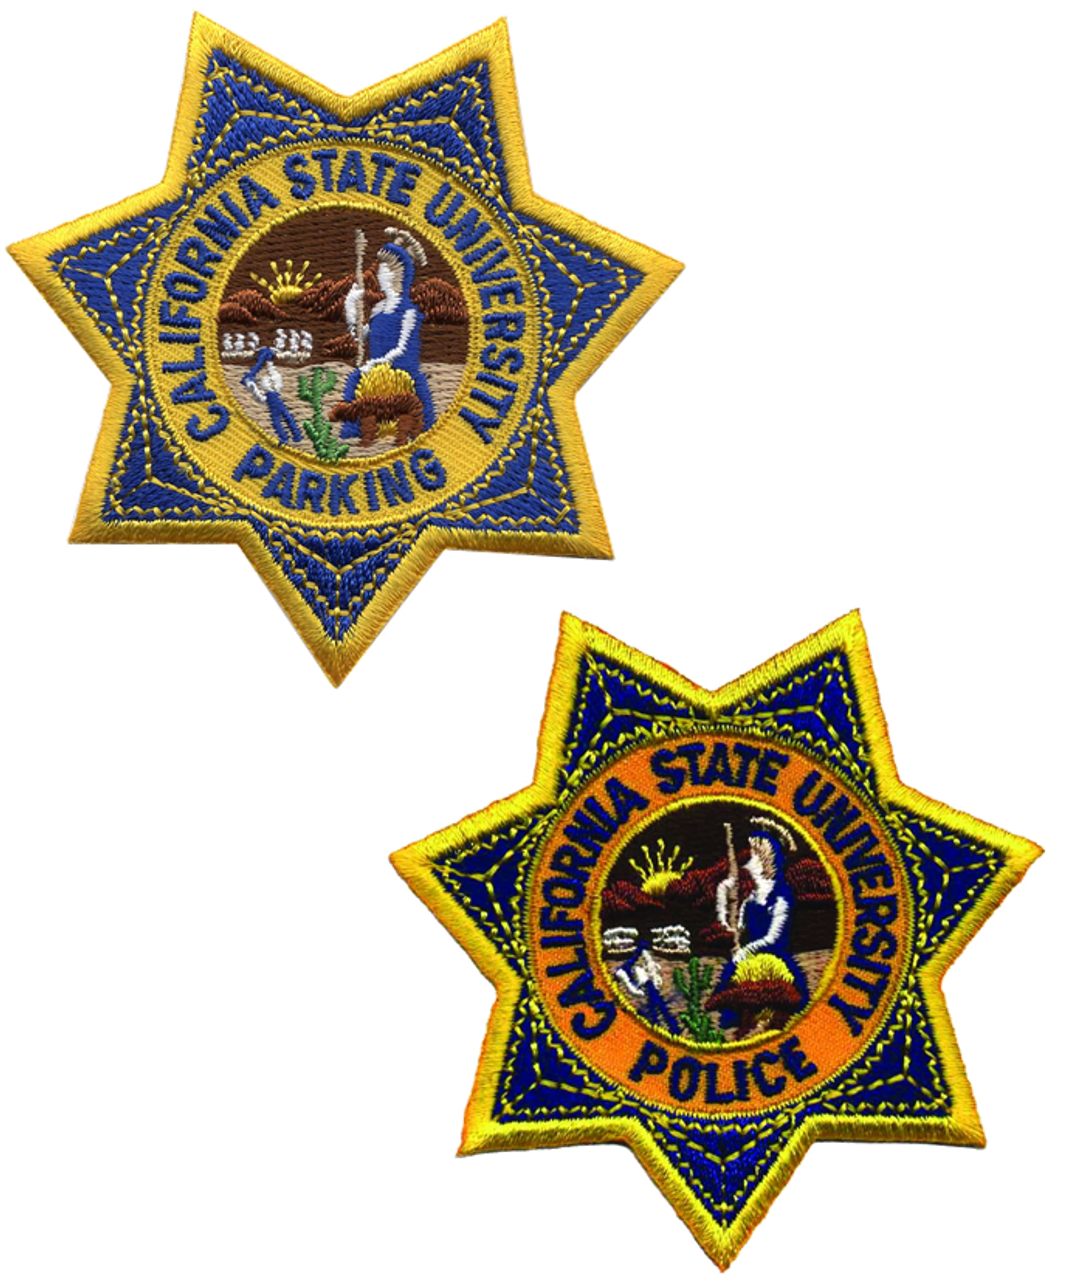 star police badge